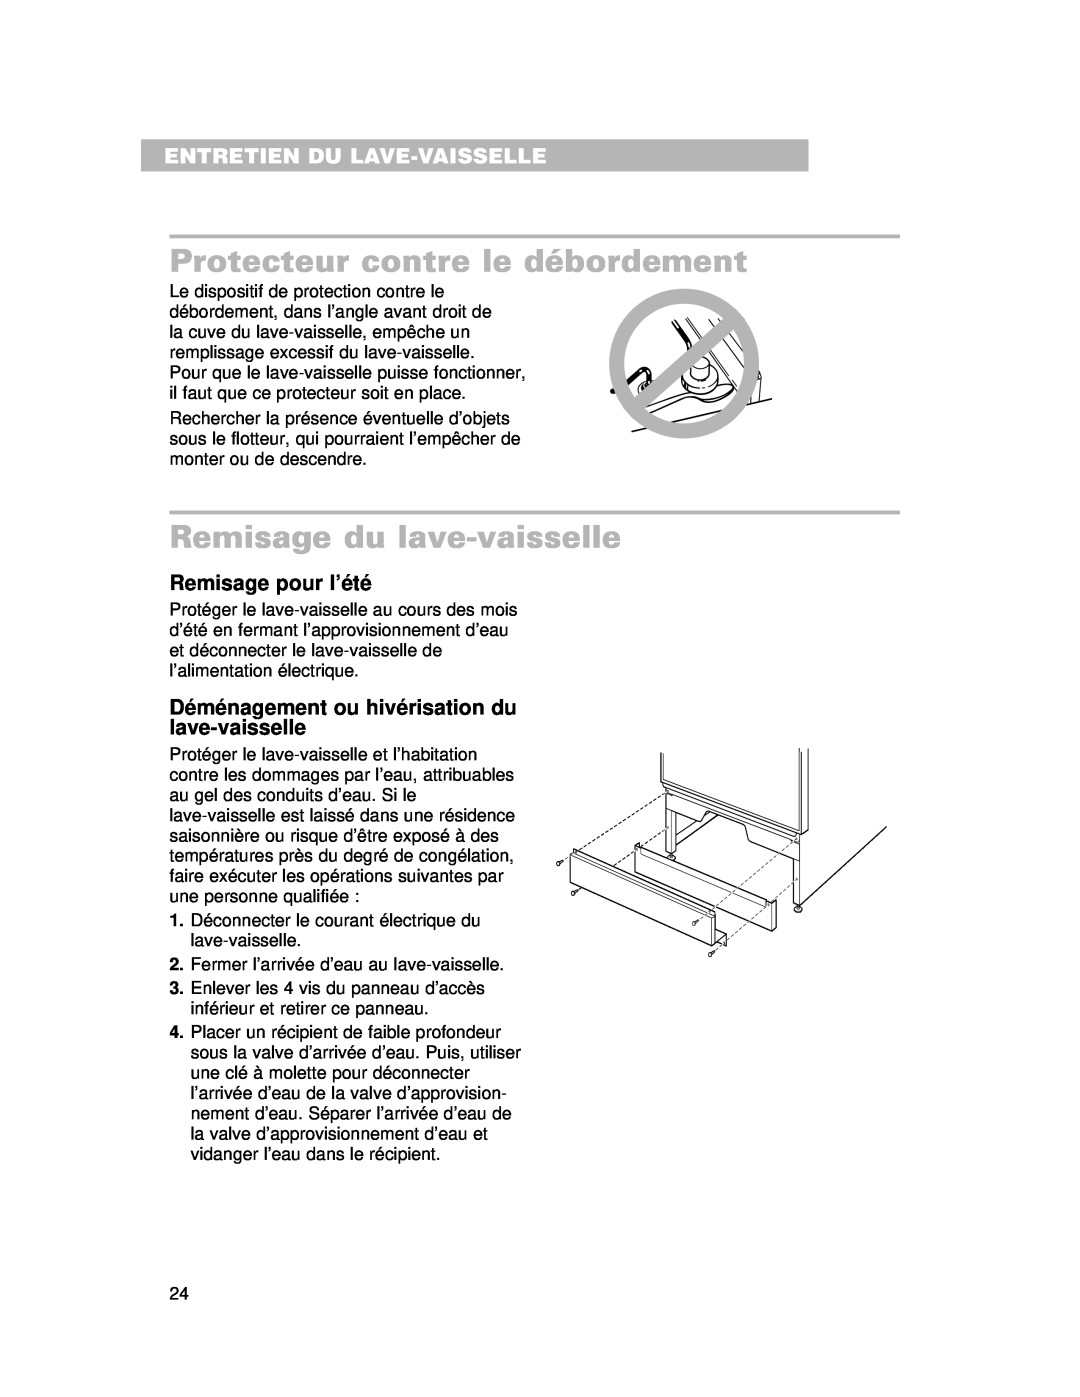 Whirlpool 910 Series warranty Protecteur contre le débordement, Remisage du lave-vaisselle, Entretien Du Lave-Vaisselle 